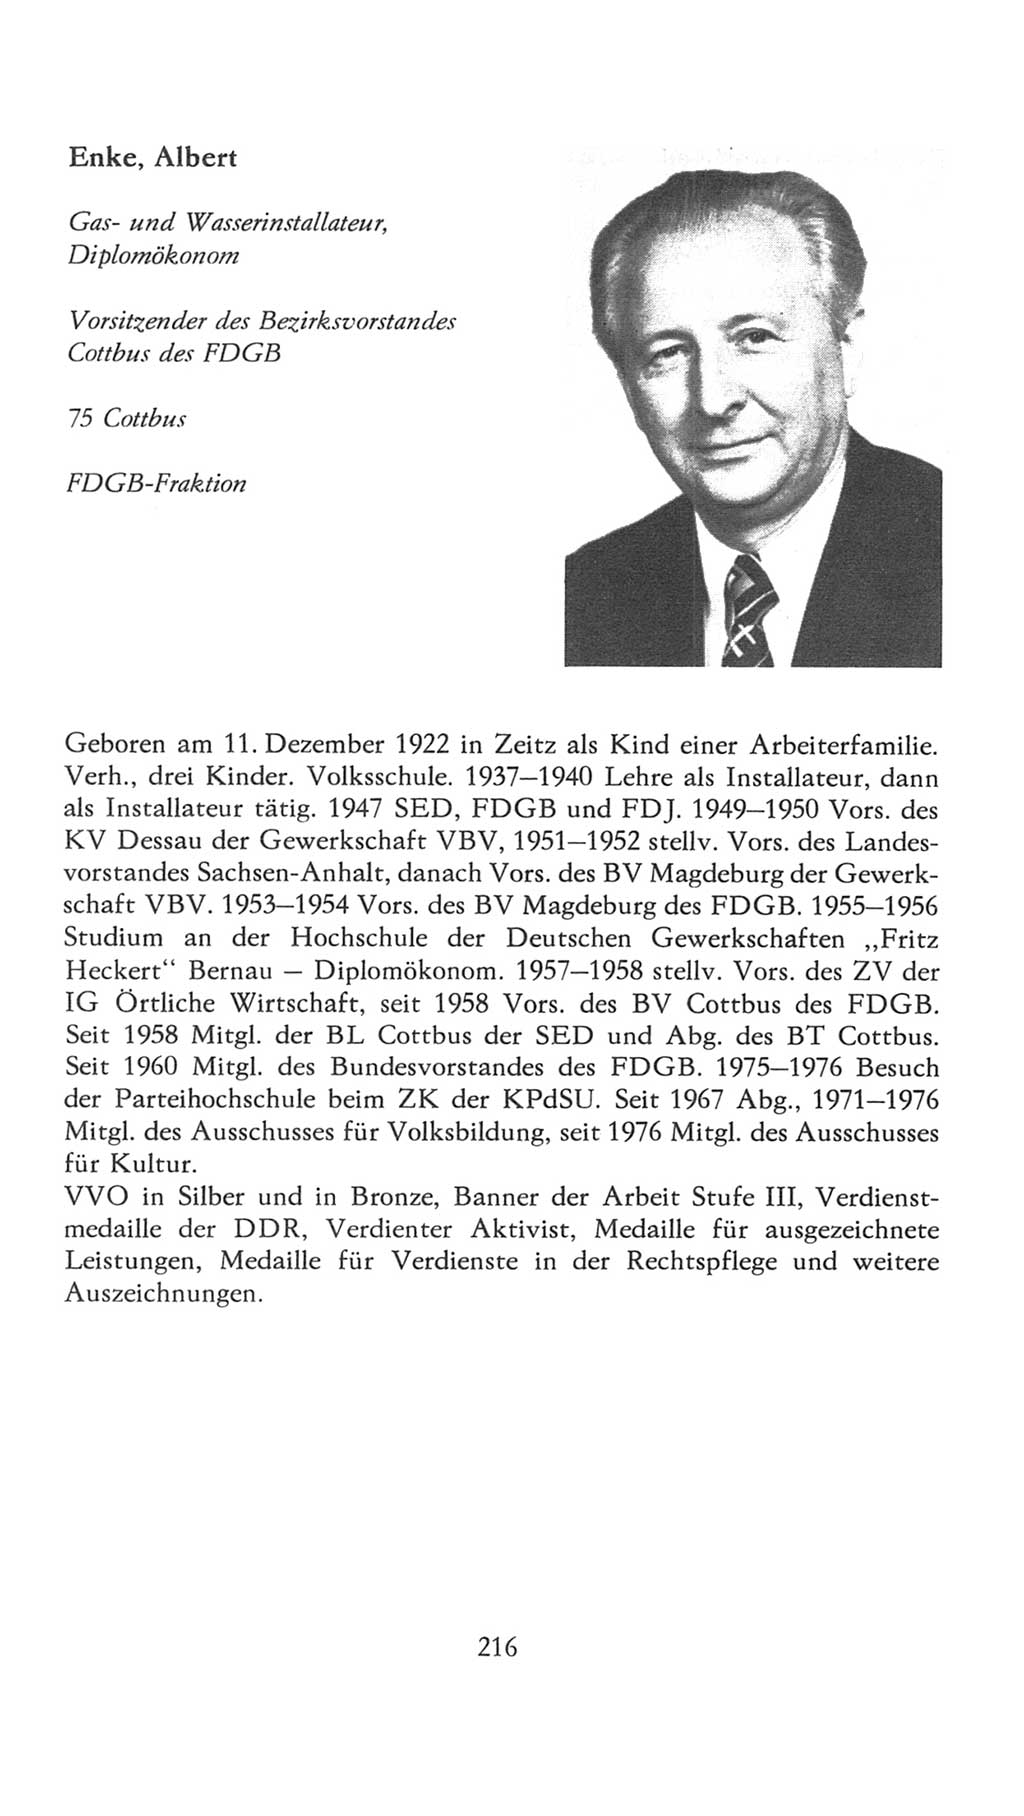 Volkskammer (VK) der Deutschen Demokratischen Republik (DDR), 7. Wahlperiode 1976-1981, Seite 216 (VK. DDR 7. WP. 1976-1981, S. 216)